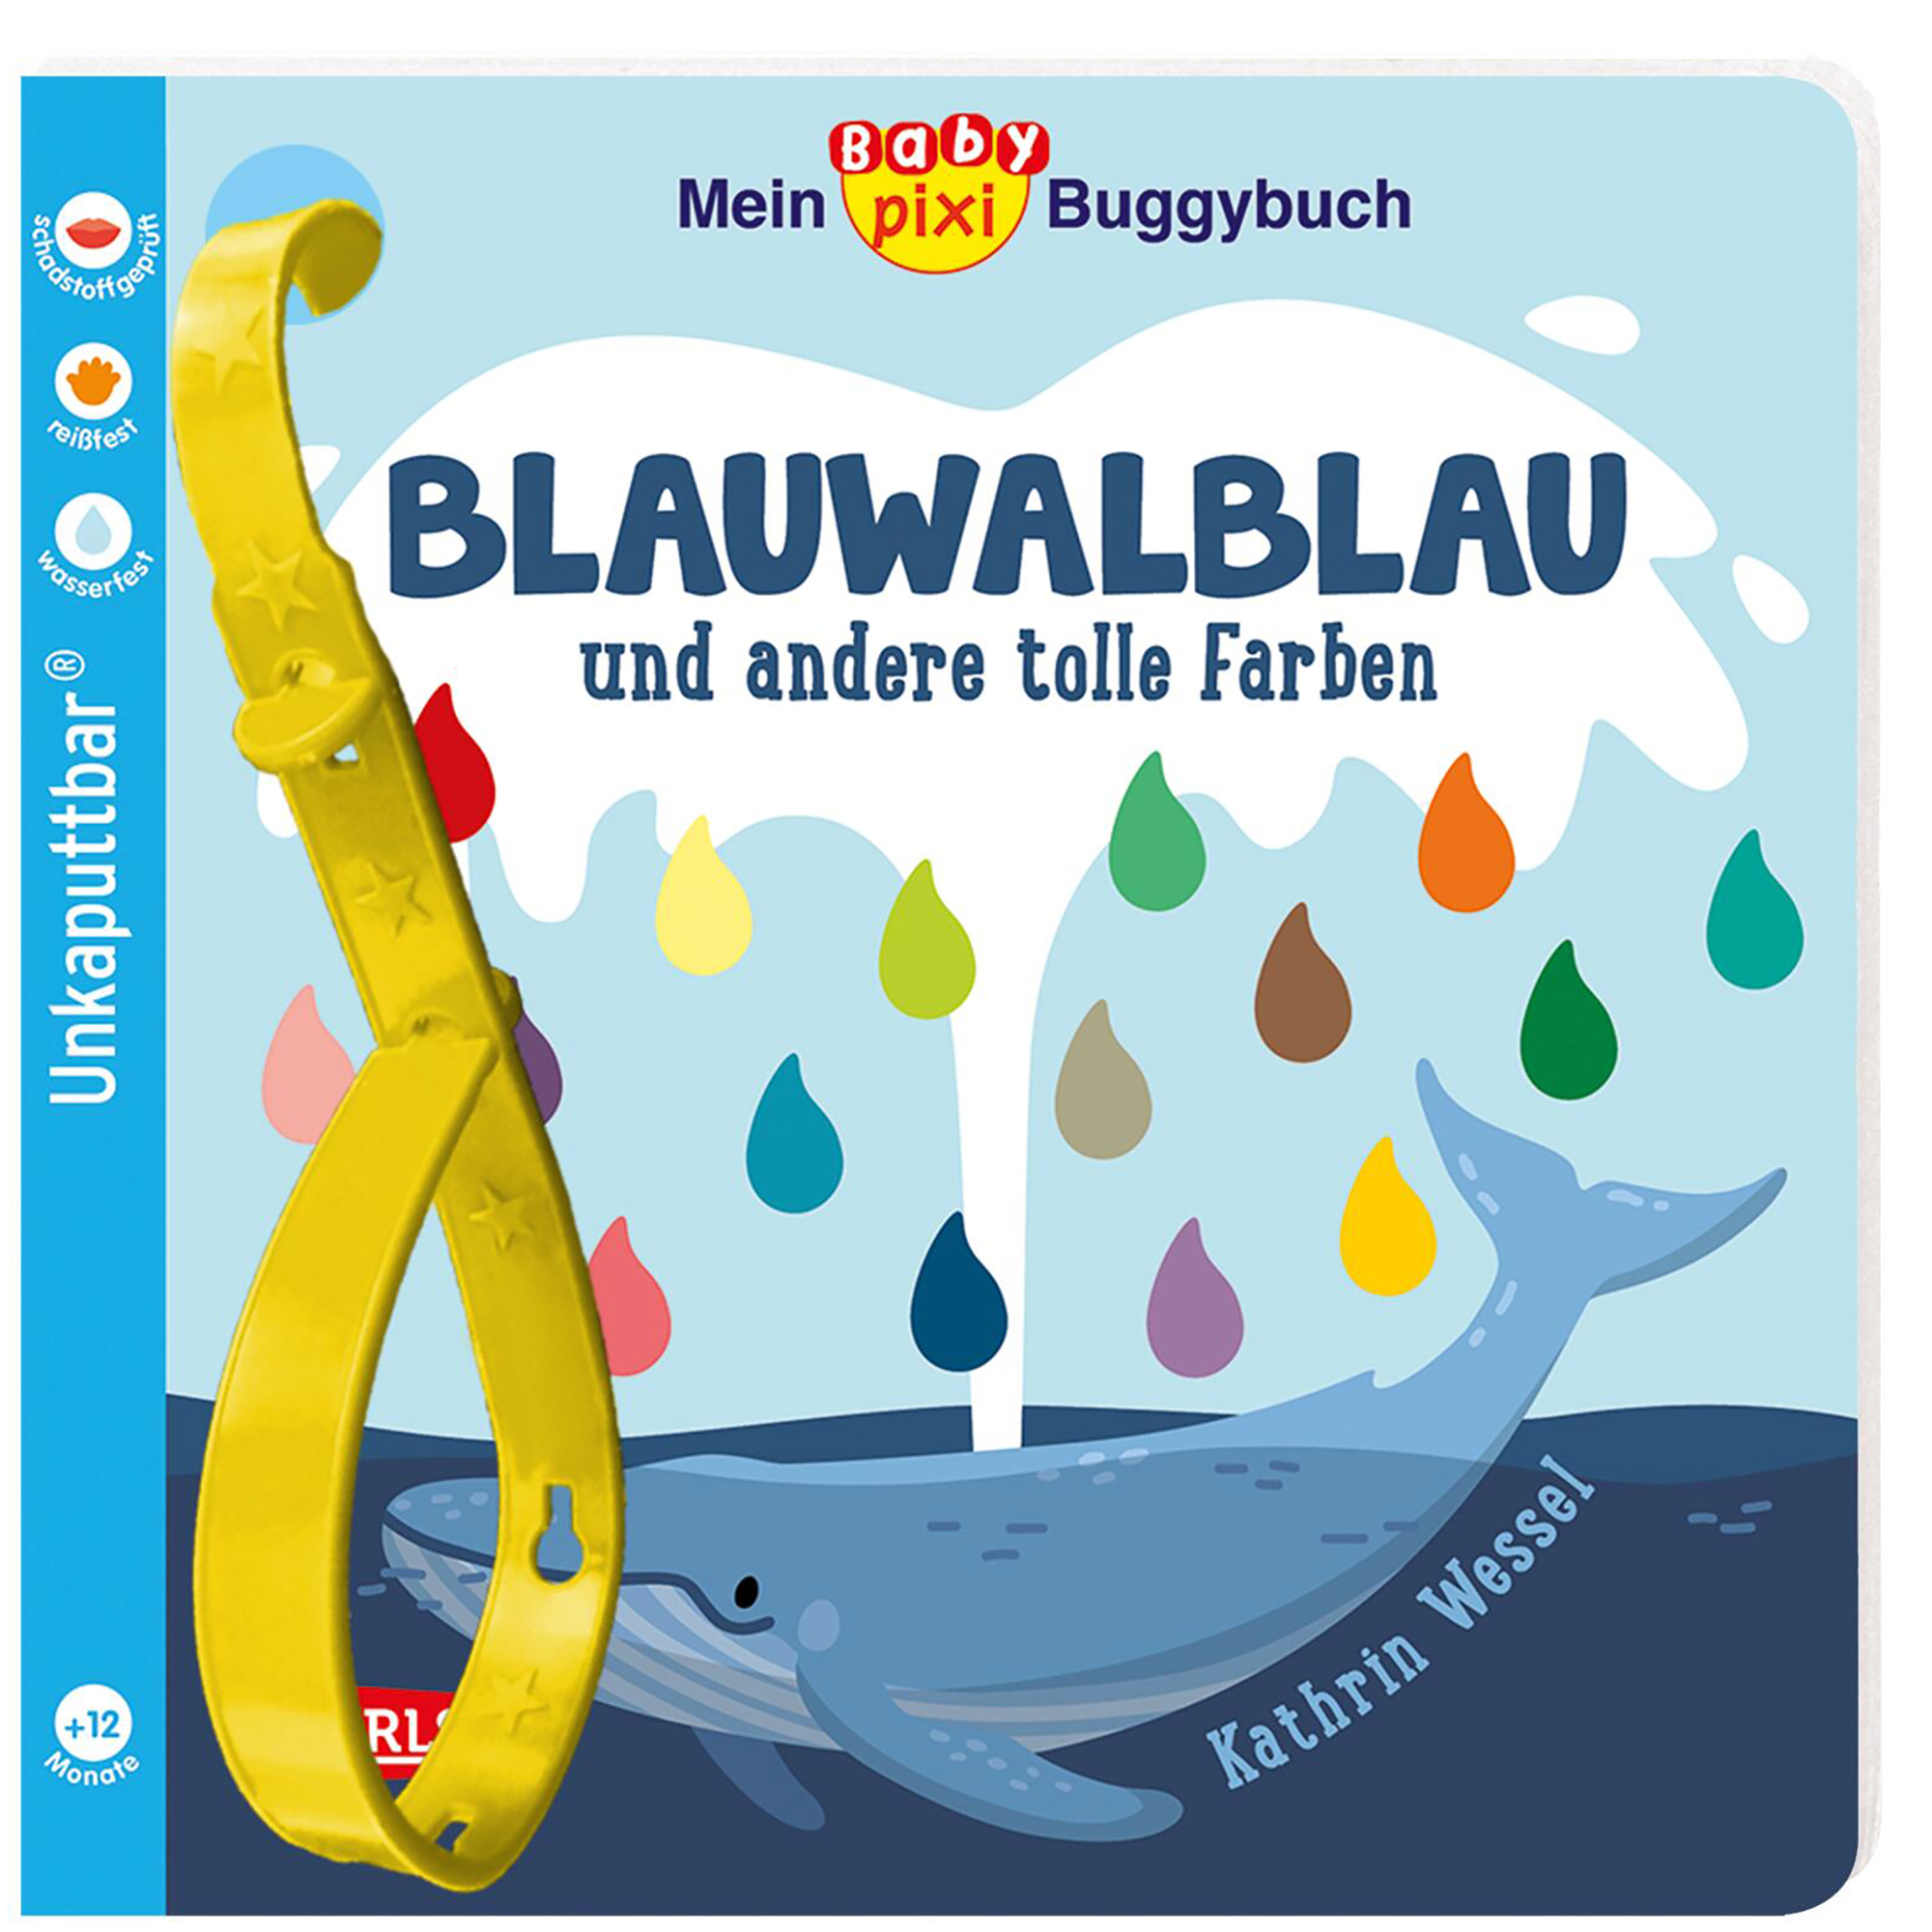 Baby Pixi Buggybuch (unkaputtbar) 135: Blauwalblau und andere tolle Farben CARLSEN Blau 2000584911806 1